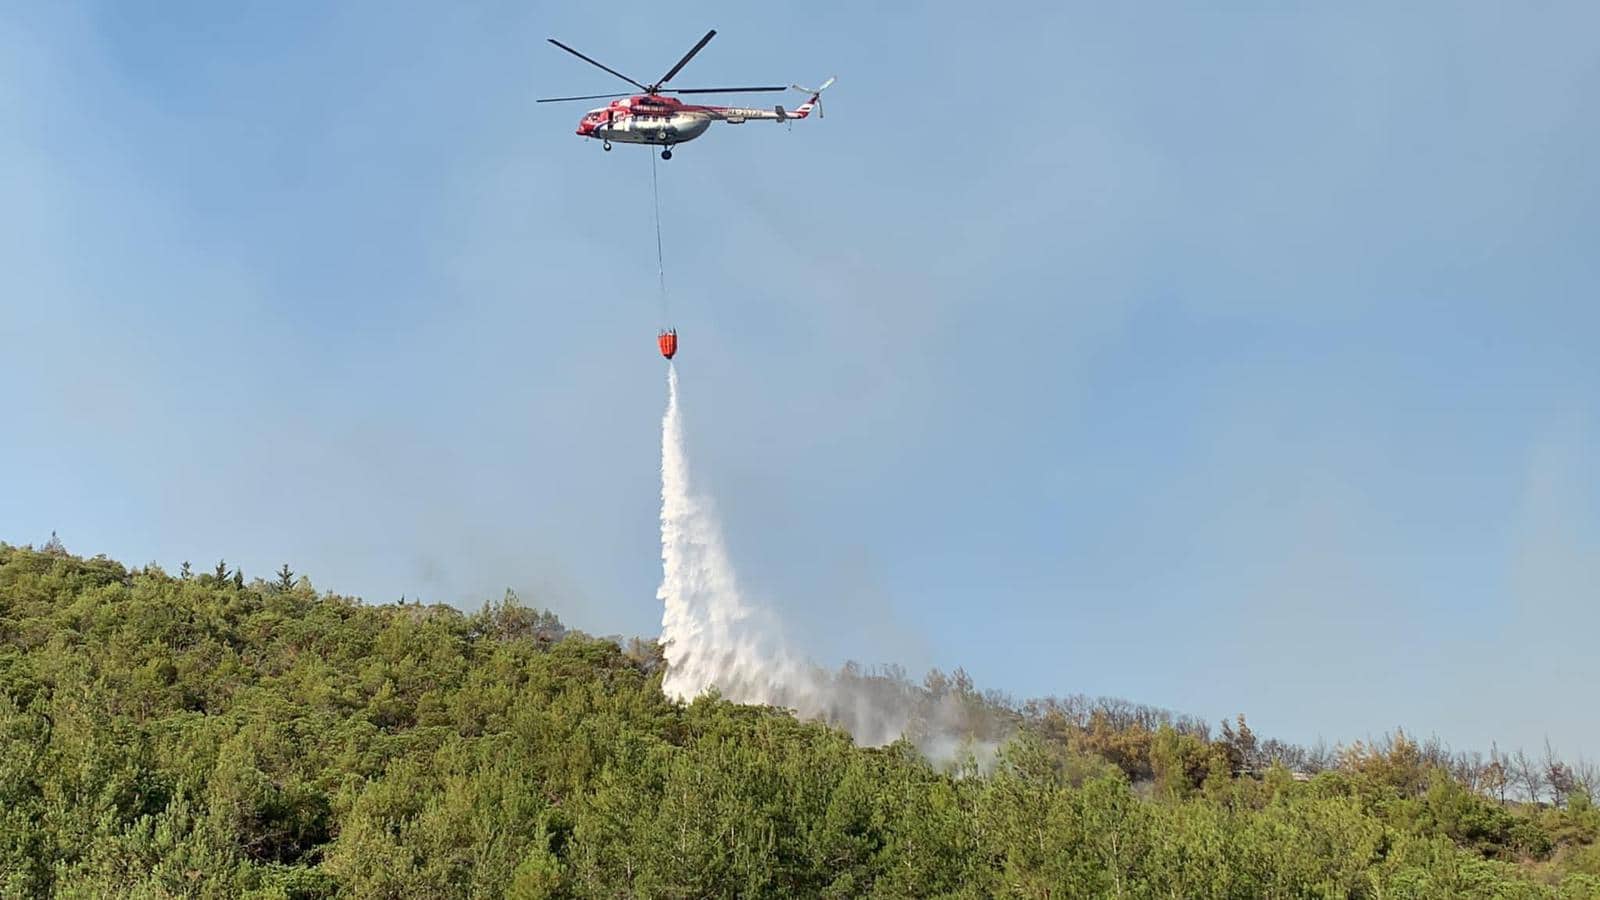 Başbakanlık Afet ve Acil Durum Komitesi Başkanı Cahitoğlu:Yangına 5 helikopter ile müdahale ediliyor